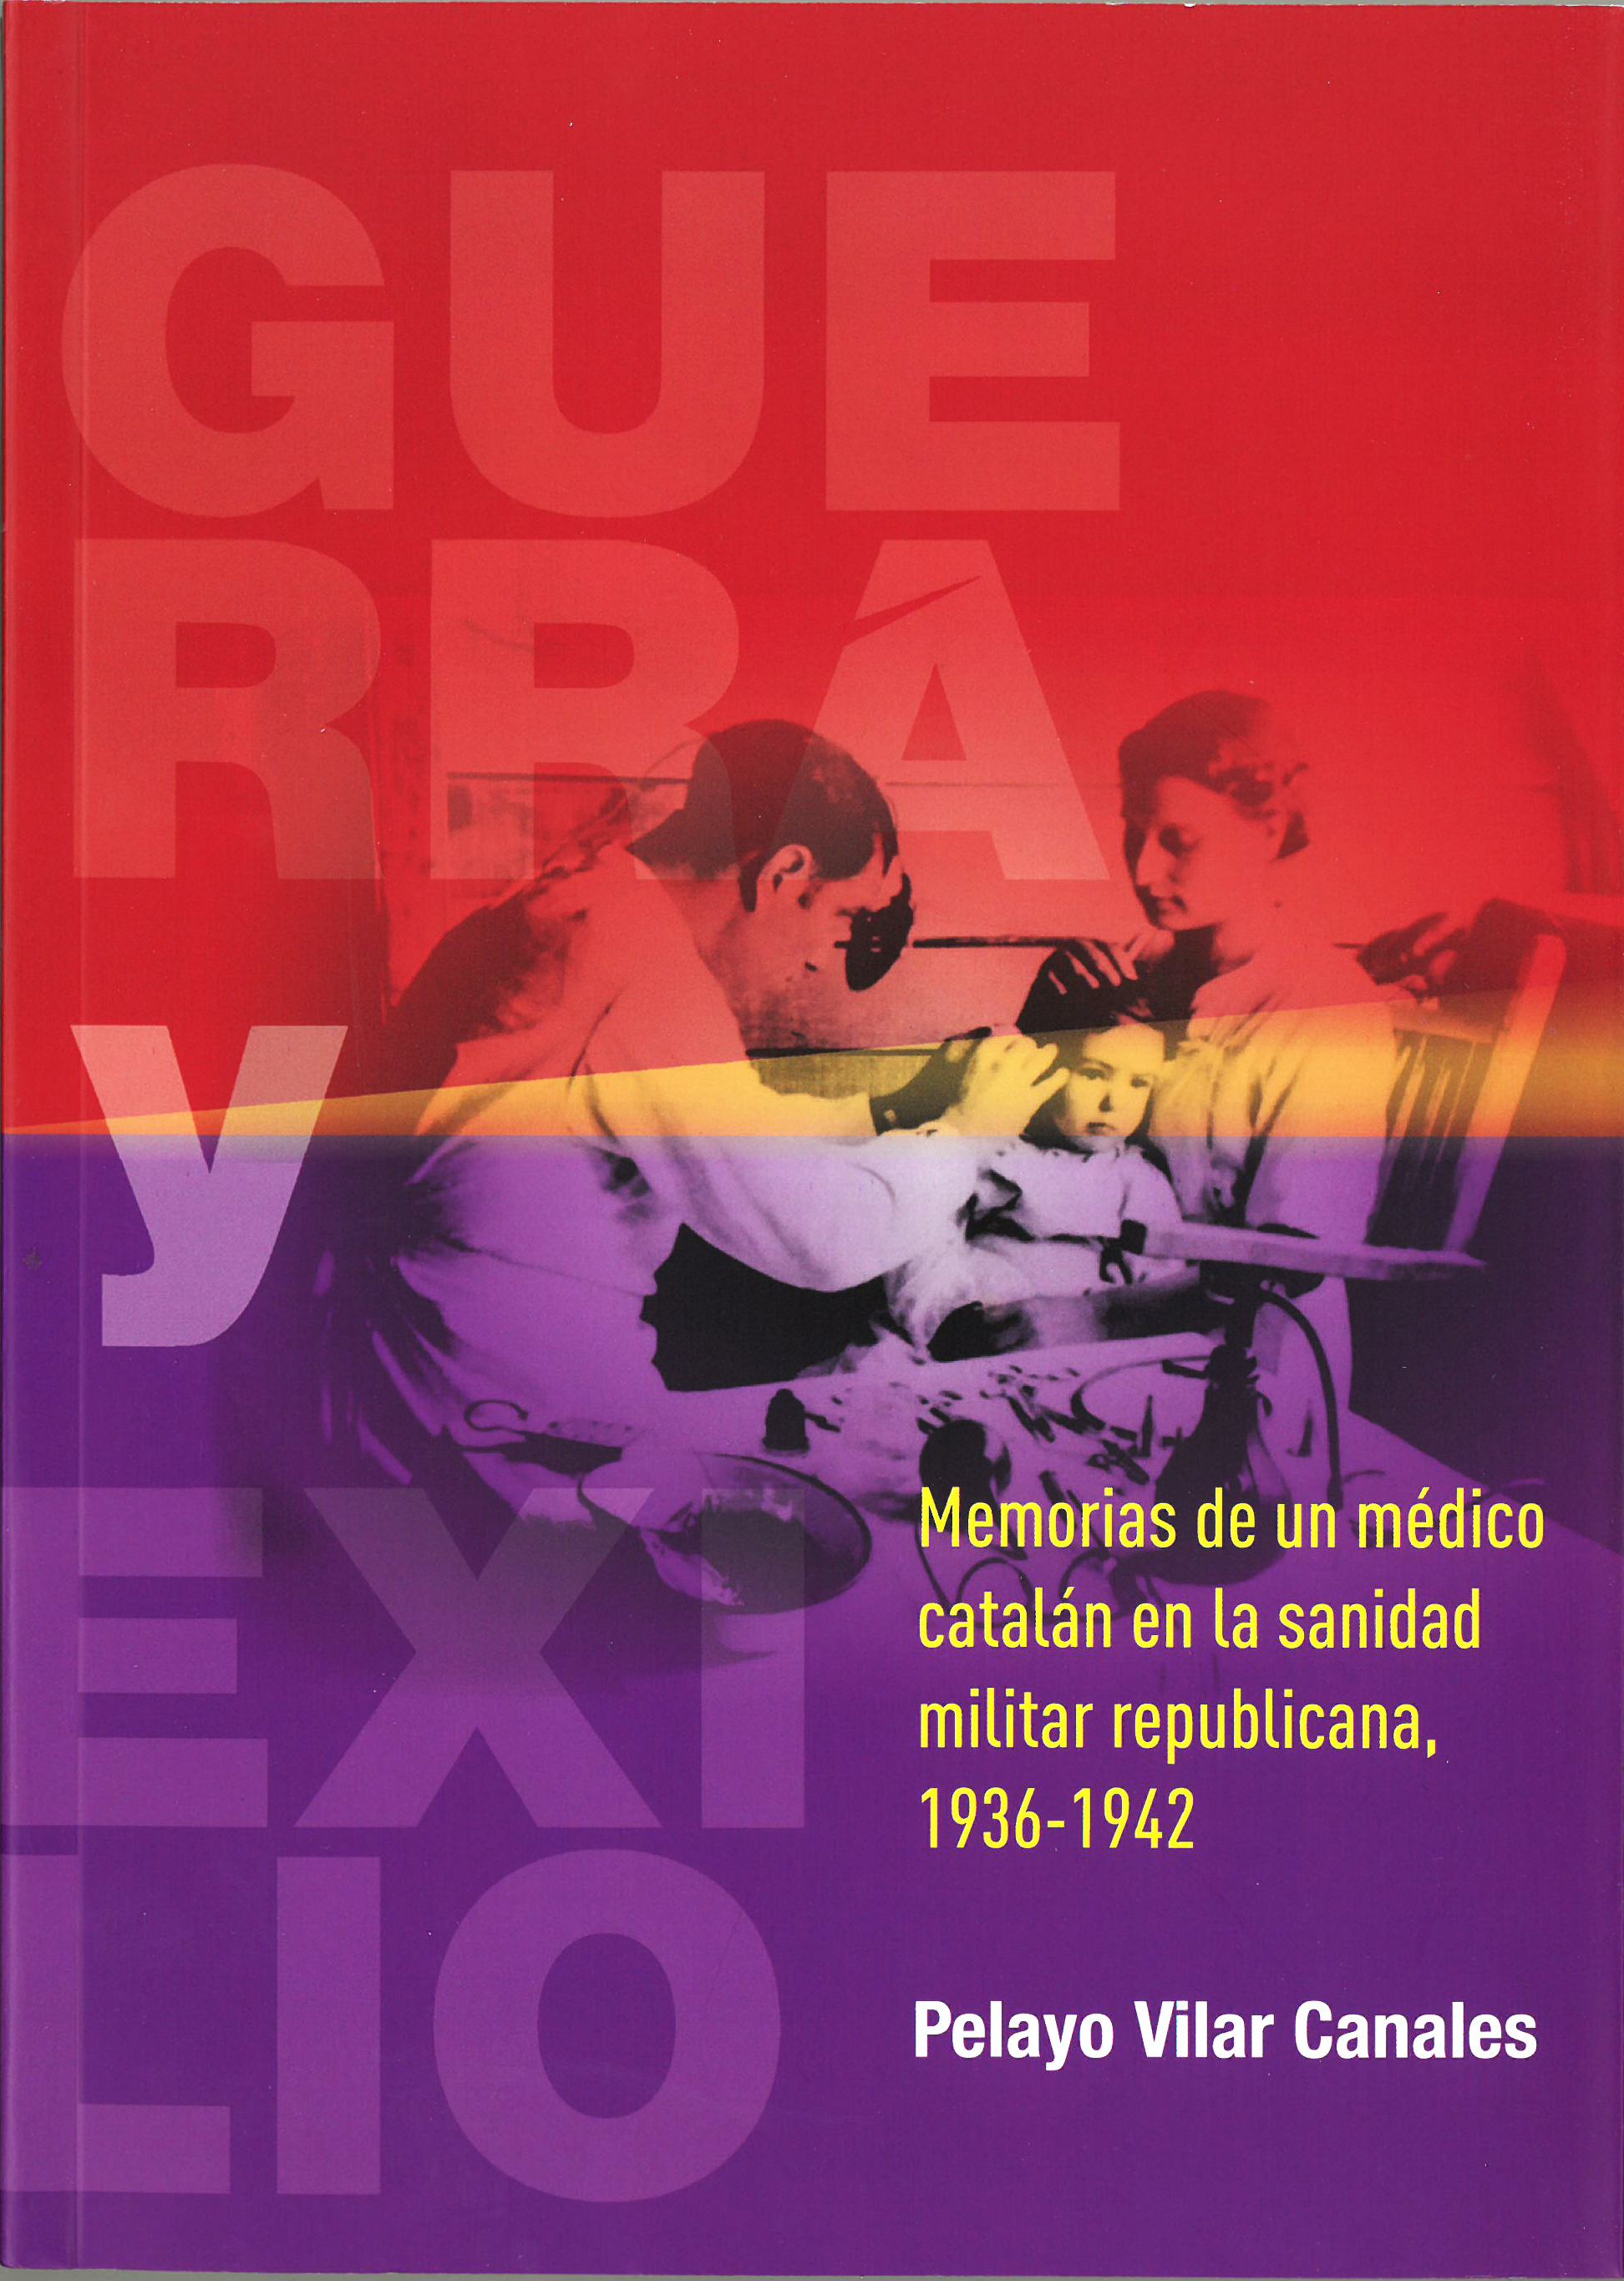 Guerra y Exilio. Memorias de un médico catalán en la sanidad militar republicana. 1936-1942 Image